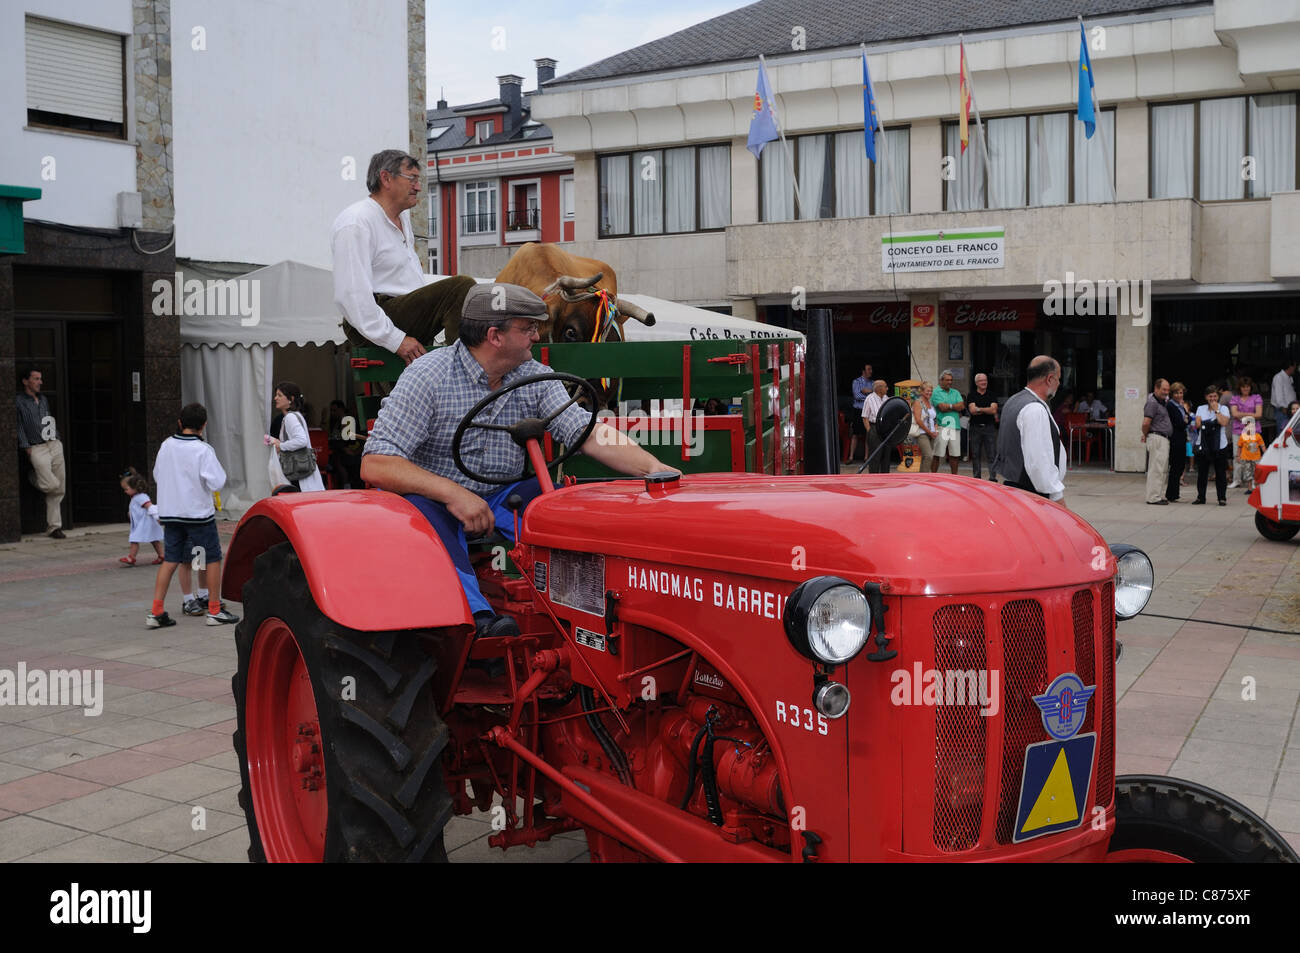 Barreiros Traktor - Landwirtschaftsmesse in "La Caridad" (El Franco Rat). Principado de Asturias. Spanien Stockfoto